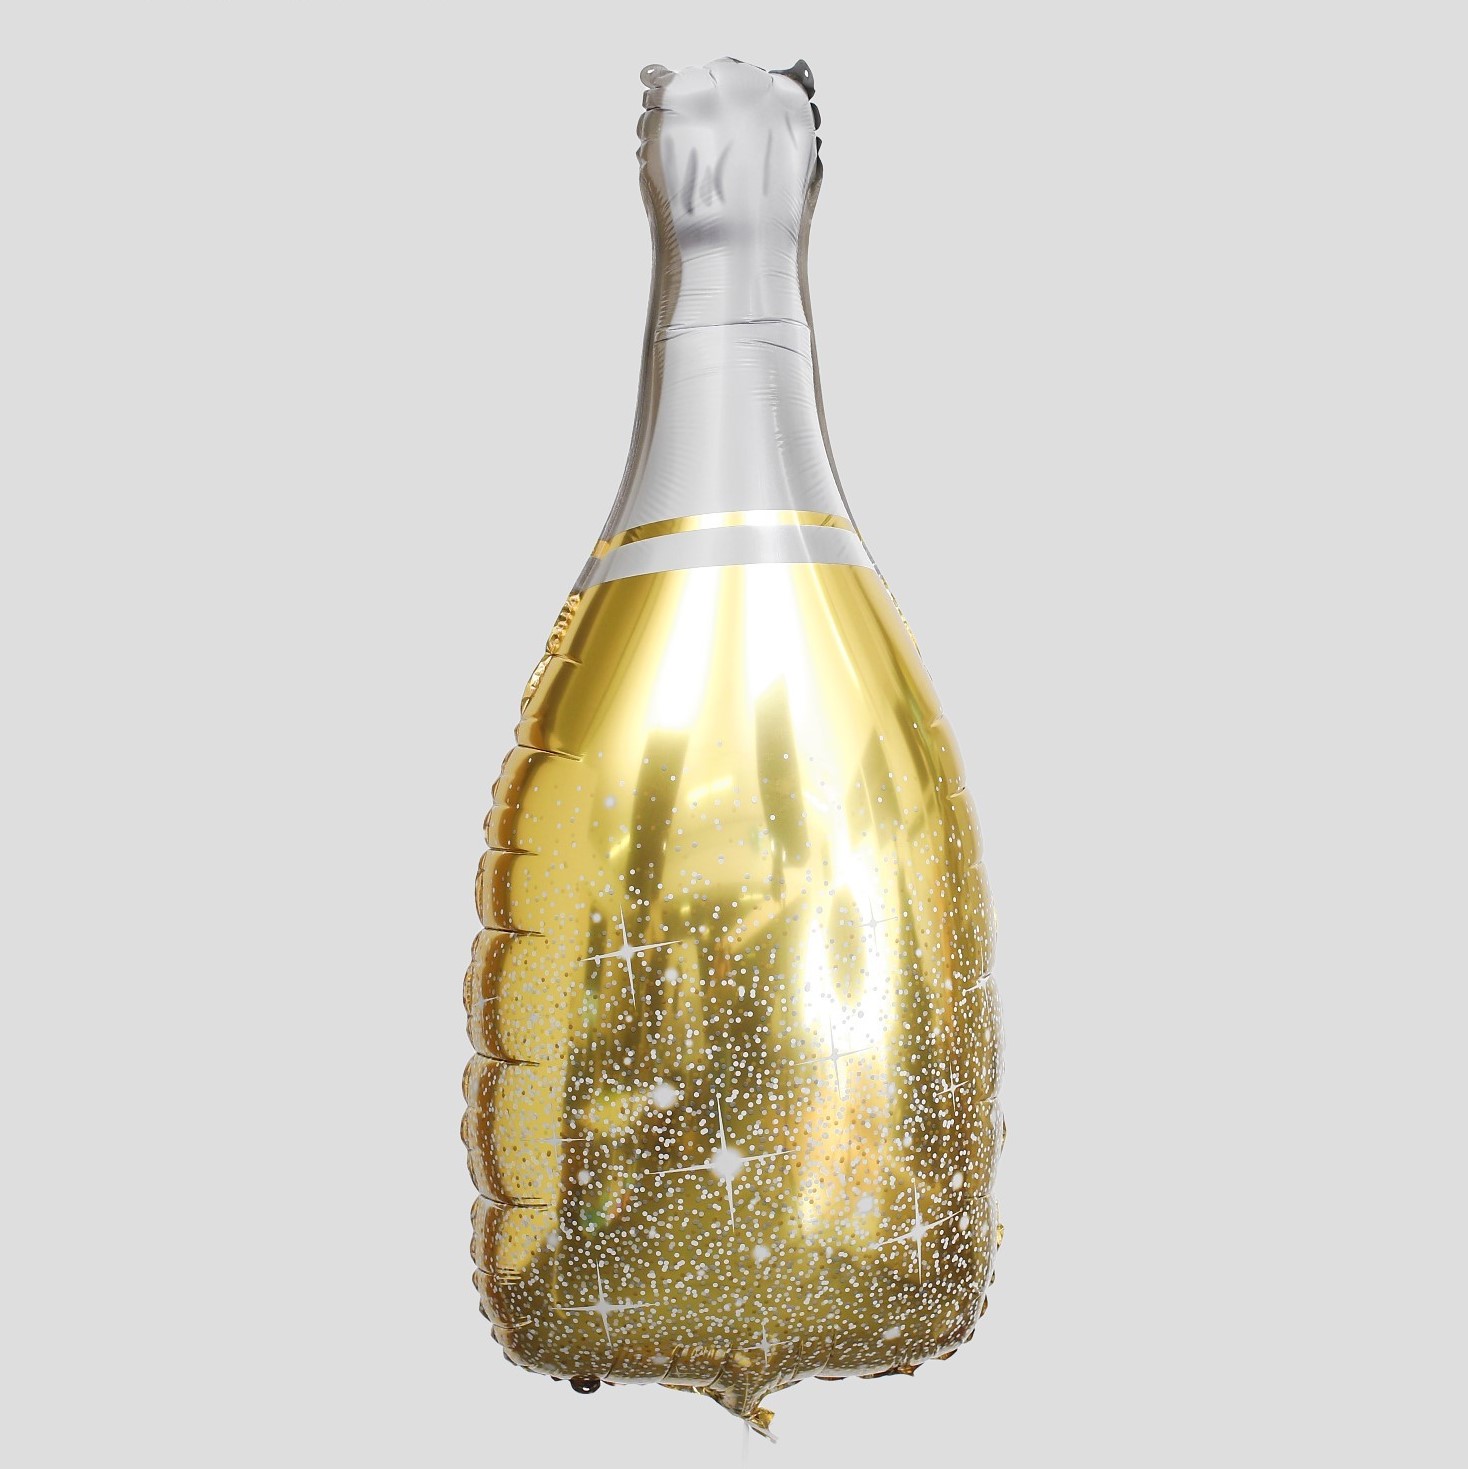 Фото по запросу Бутылка шампанского